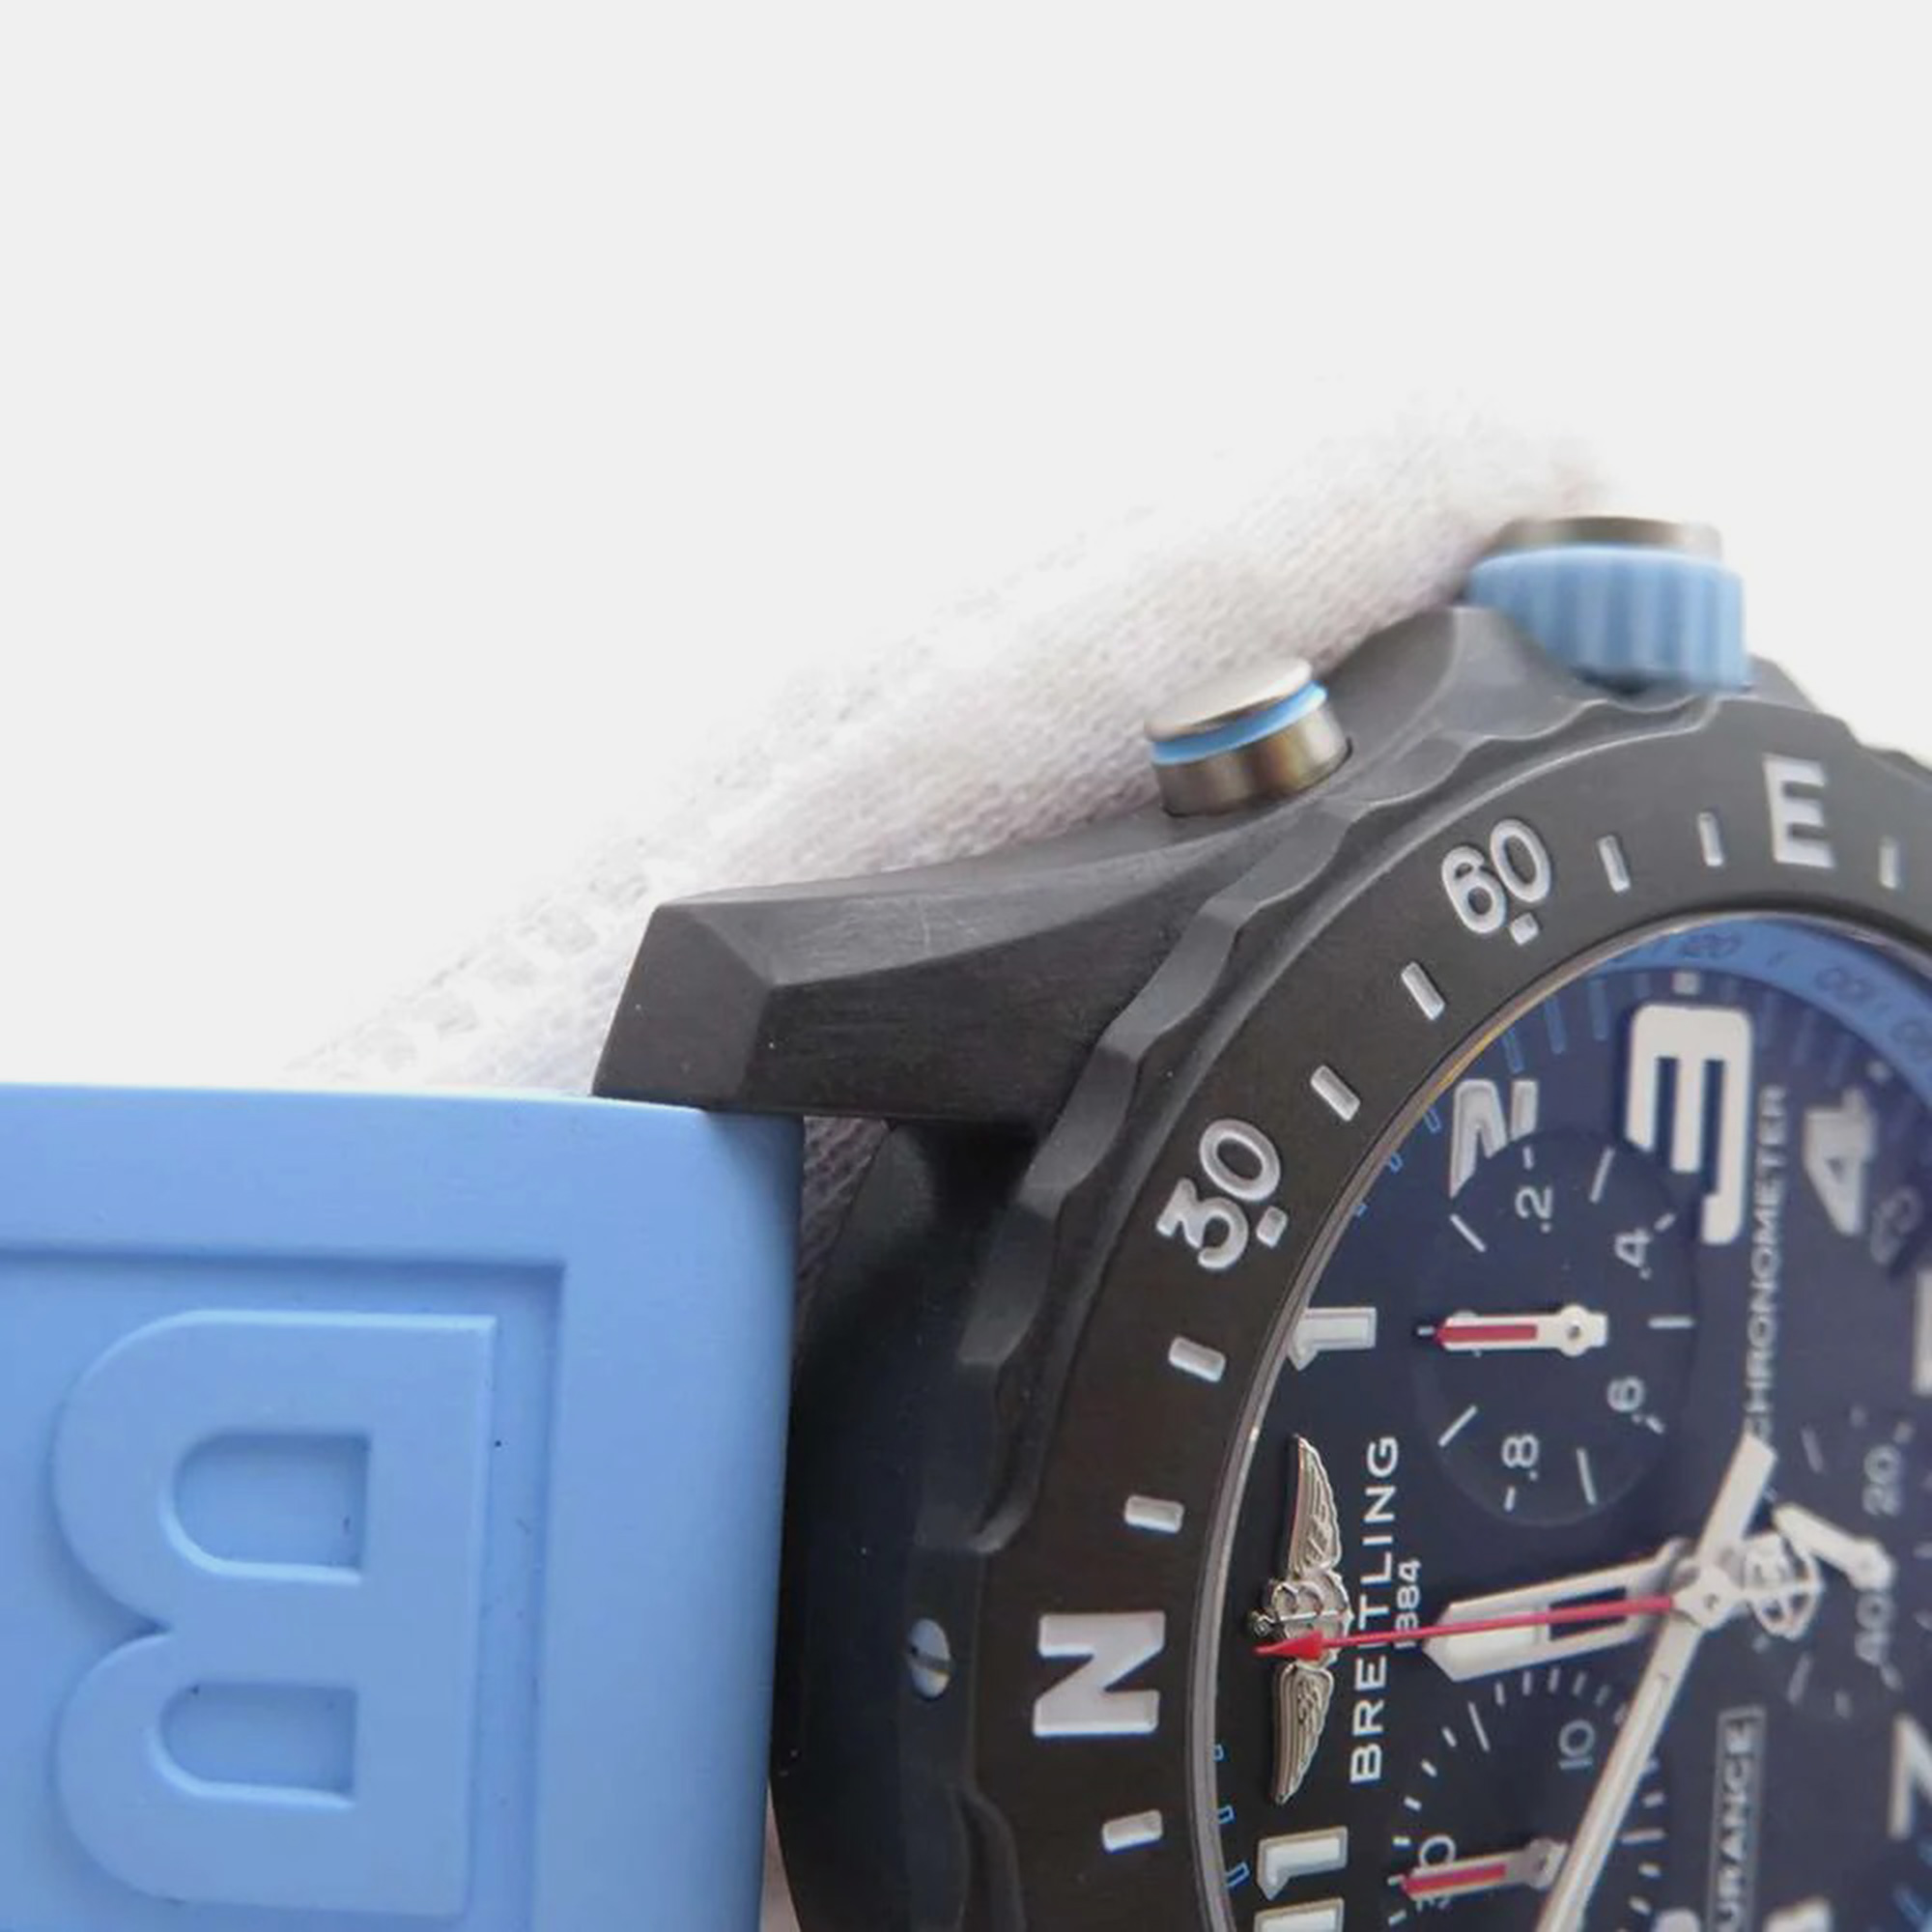 Breitling Blue PVD Coated Endurance Pro X82310 Quartz Men's Wristwatch 44 Mm